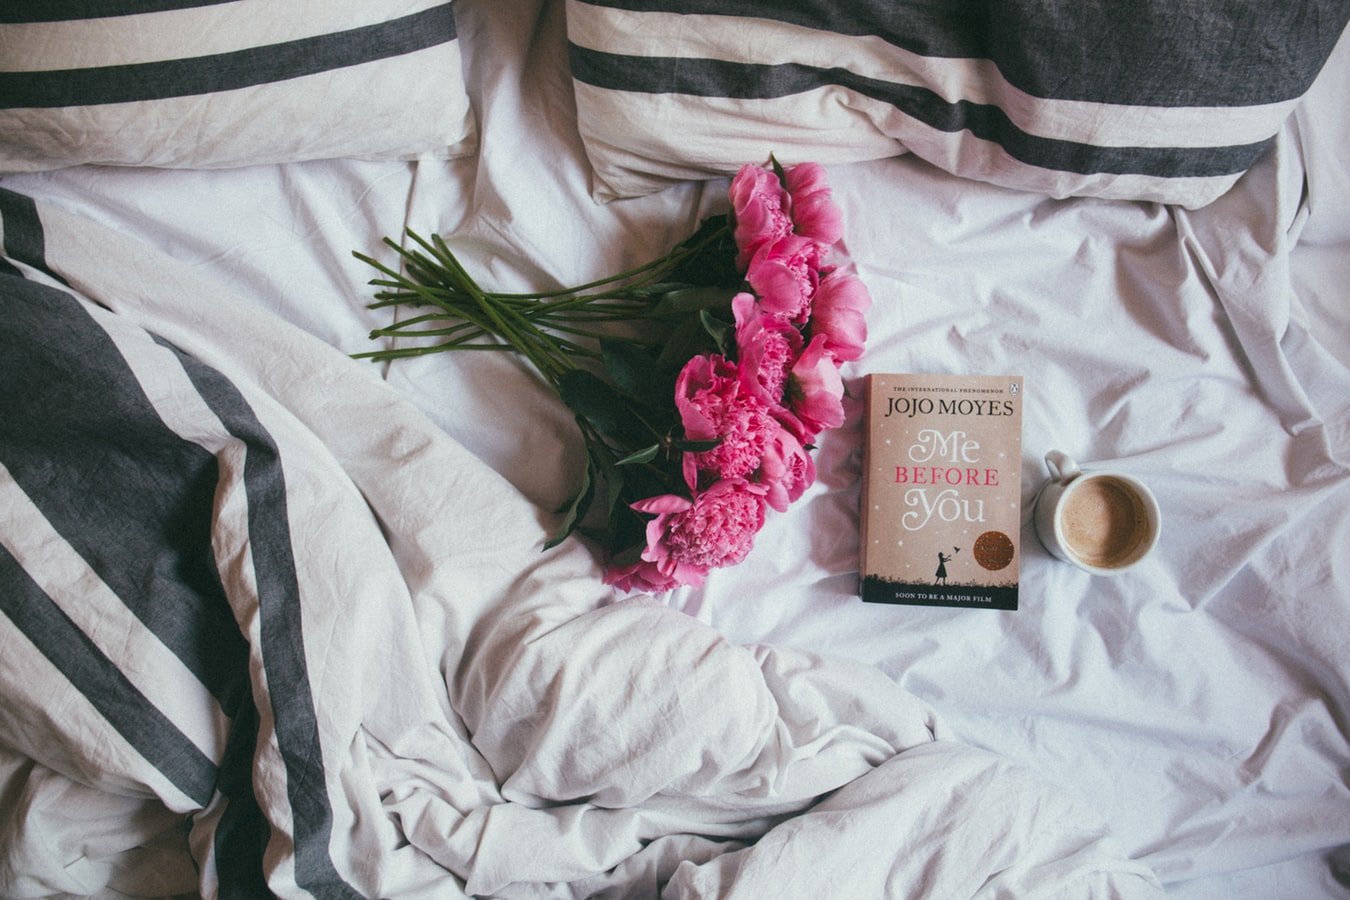 Cama com um buquê de flores rosas, um livro e uma caneca de café com leite.